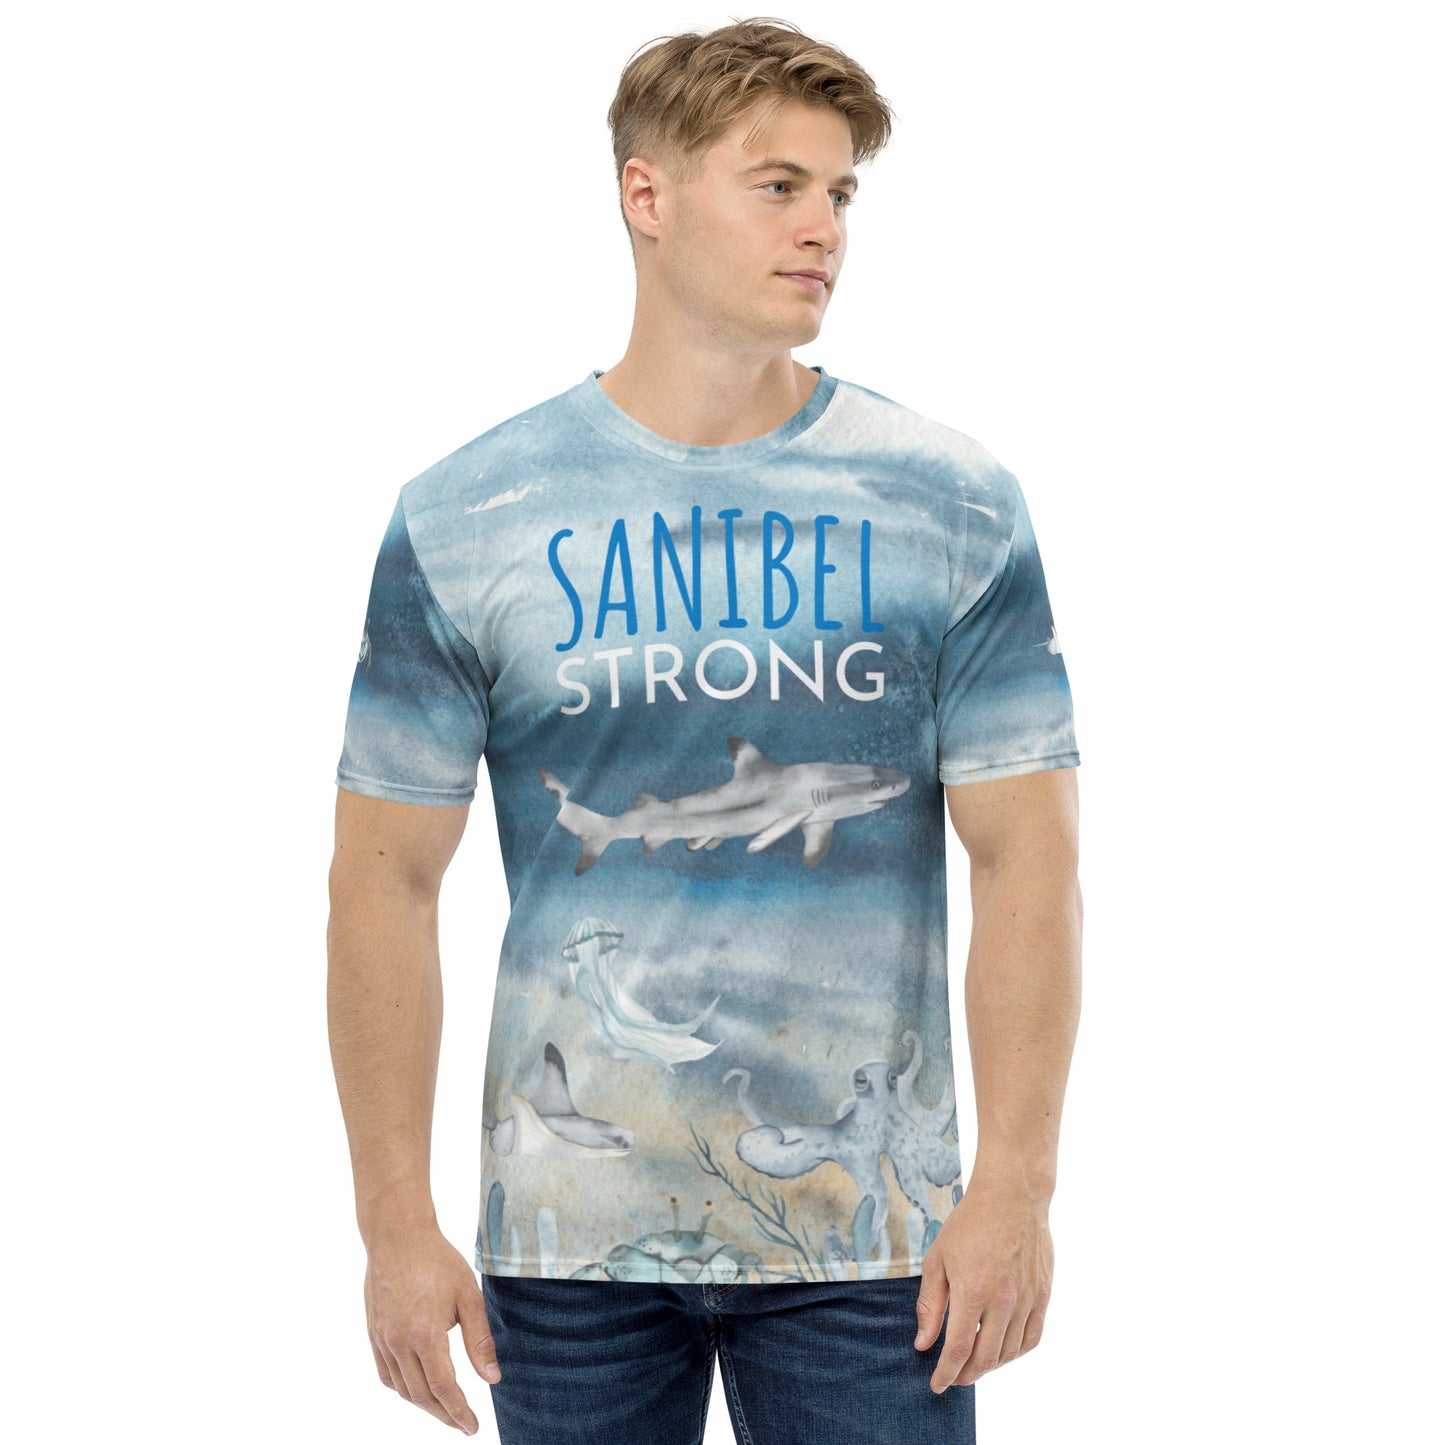 Sanibel Strong Men's Shirt - Shark Sea Life